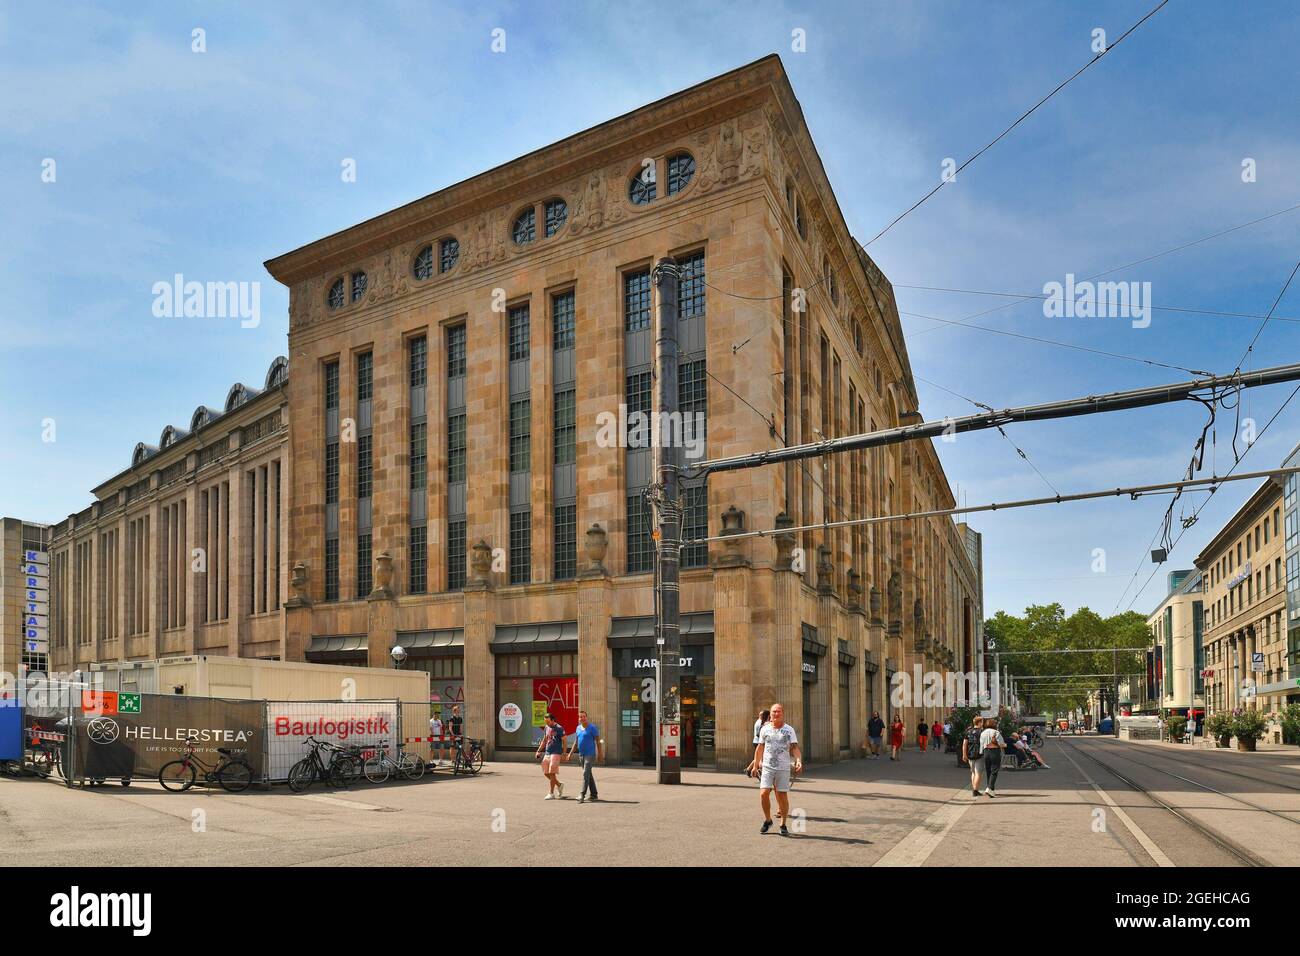 Karlsruhe, Germania - Agosto 2021: Via della città con vecchio grande magazzino storico edificio del centro commerciale chiamato 'karstadt' in stile neoclassico e Art Nouveau Foto Stock